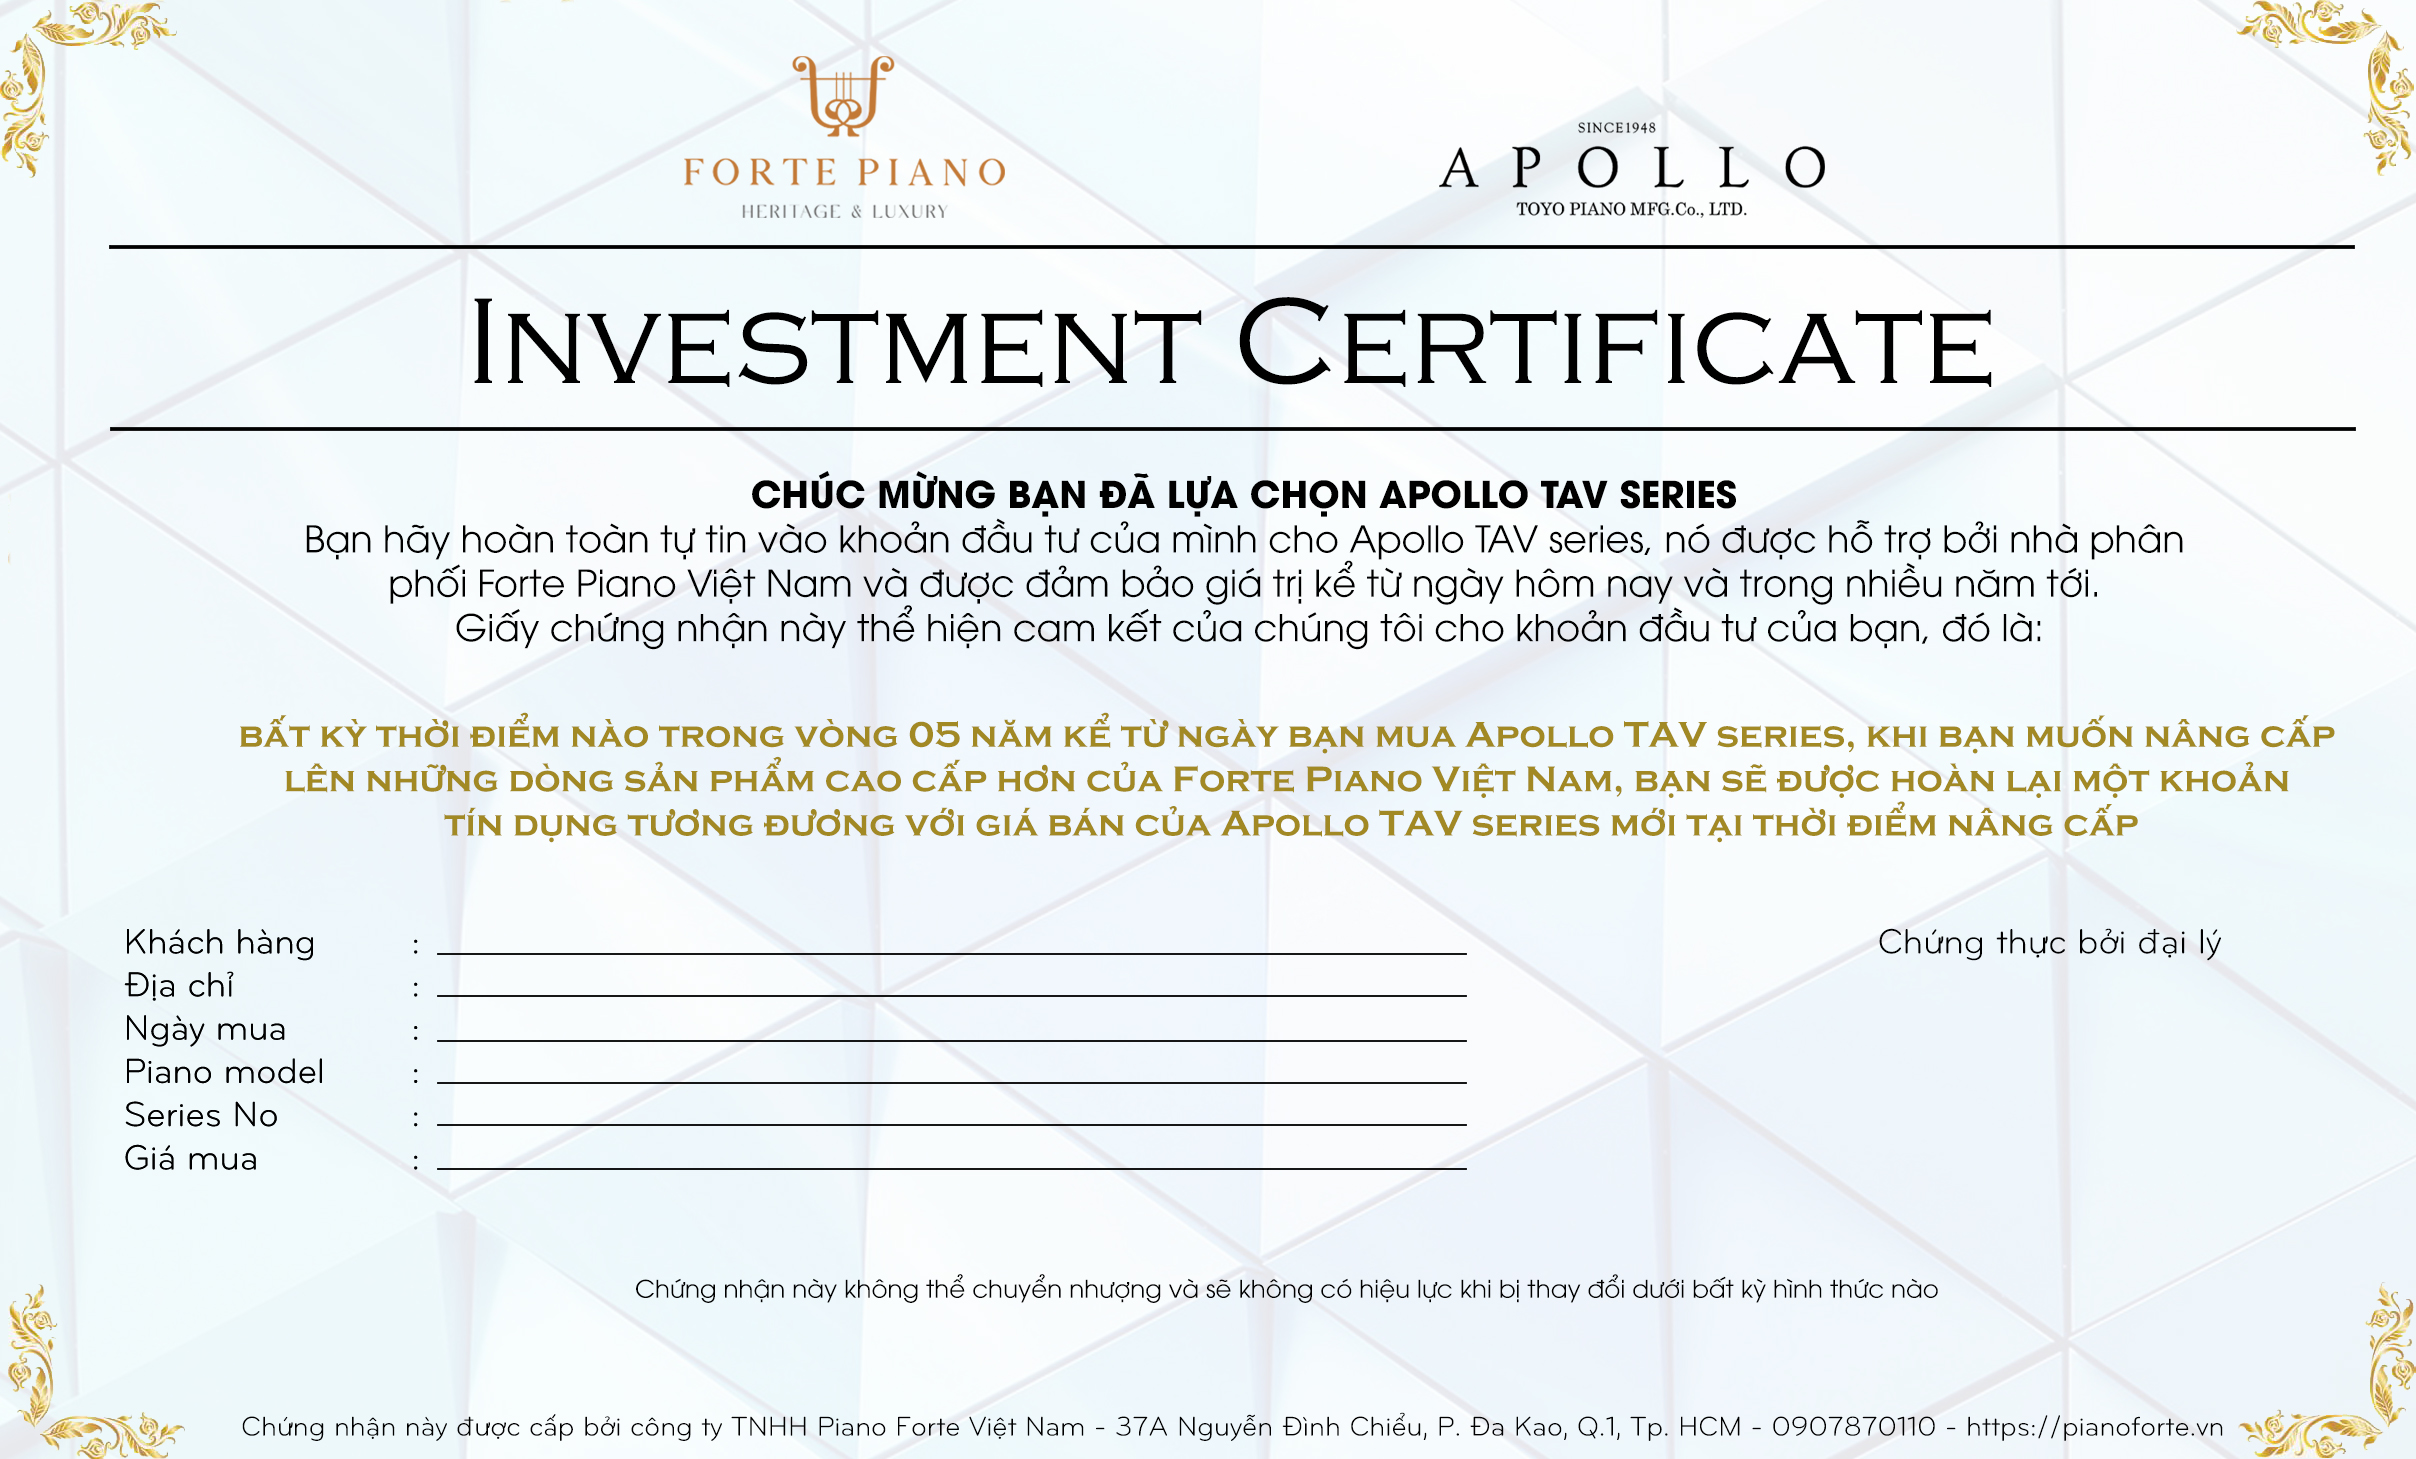 Apollo TAV Investment Certificate